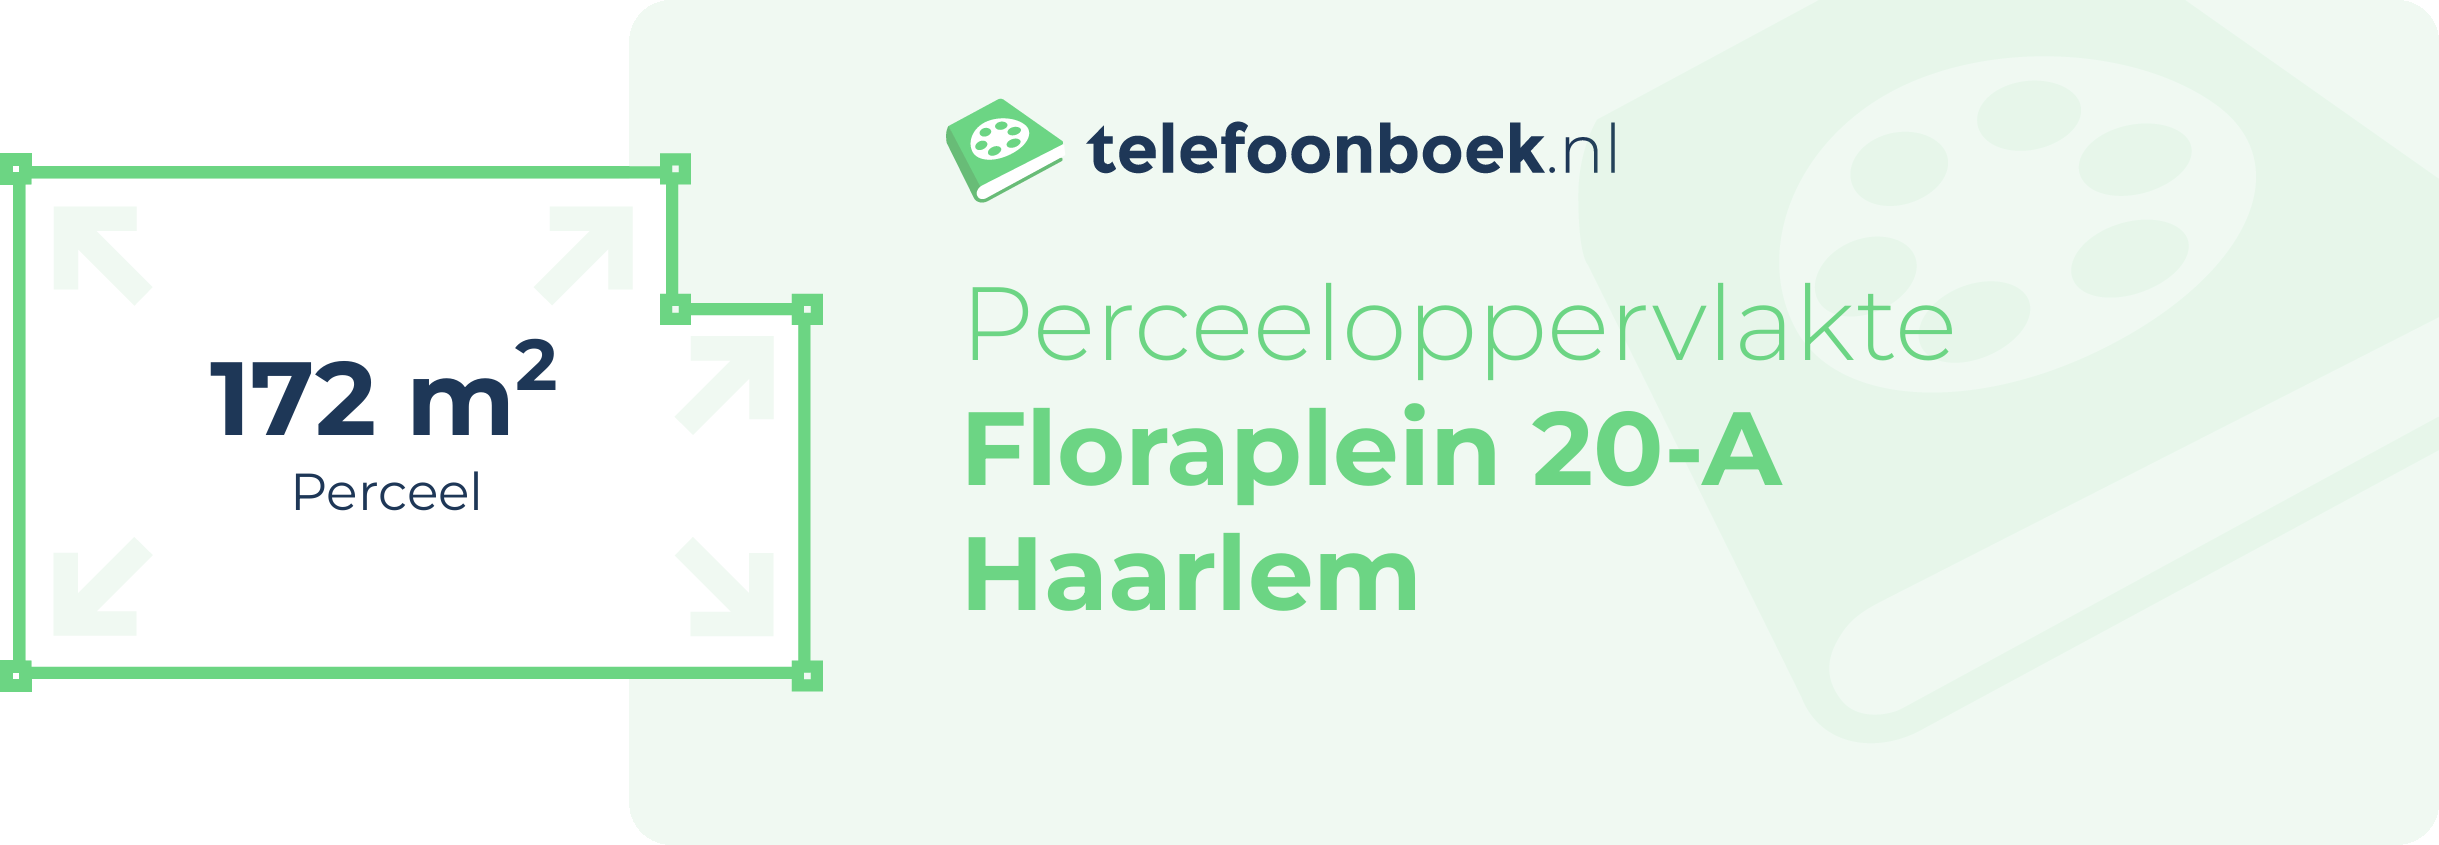 Perceeloppervlakte Floraplein 20-A Haarlem